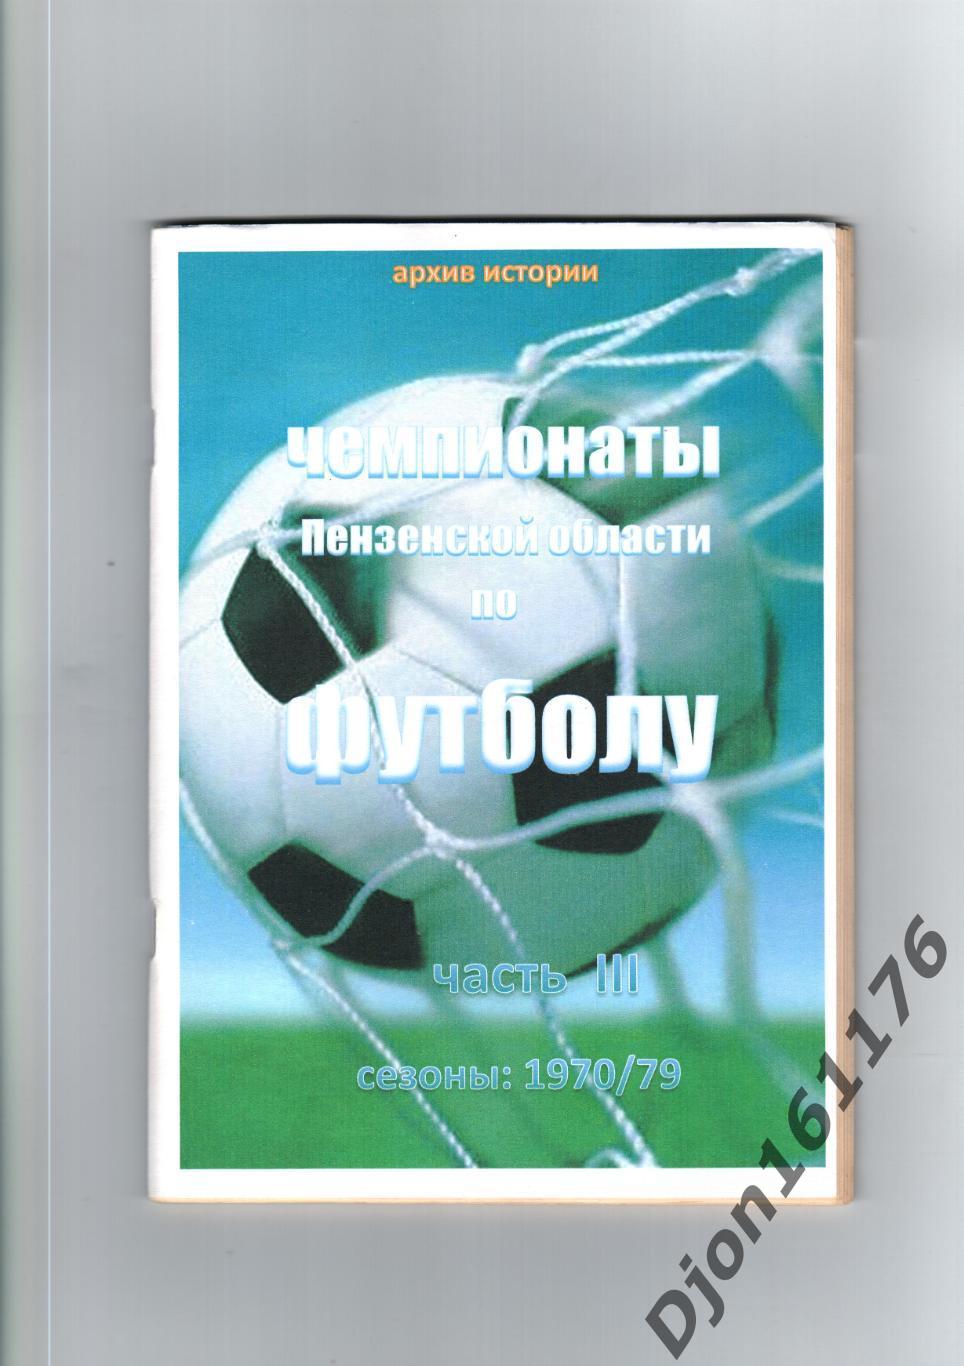 «Чемпионаты Пензенской области по футболу. Часть III. Сезоны: 1970/79»